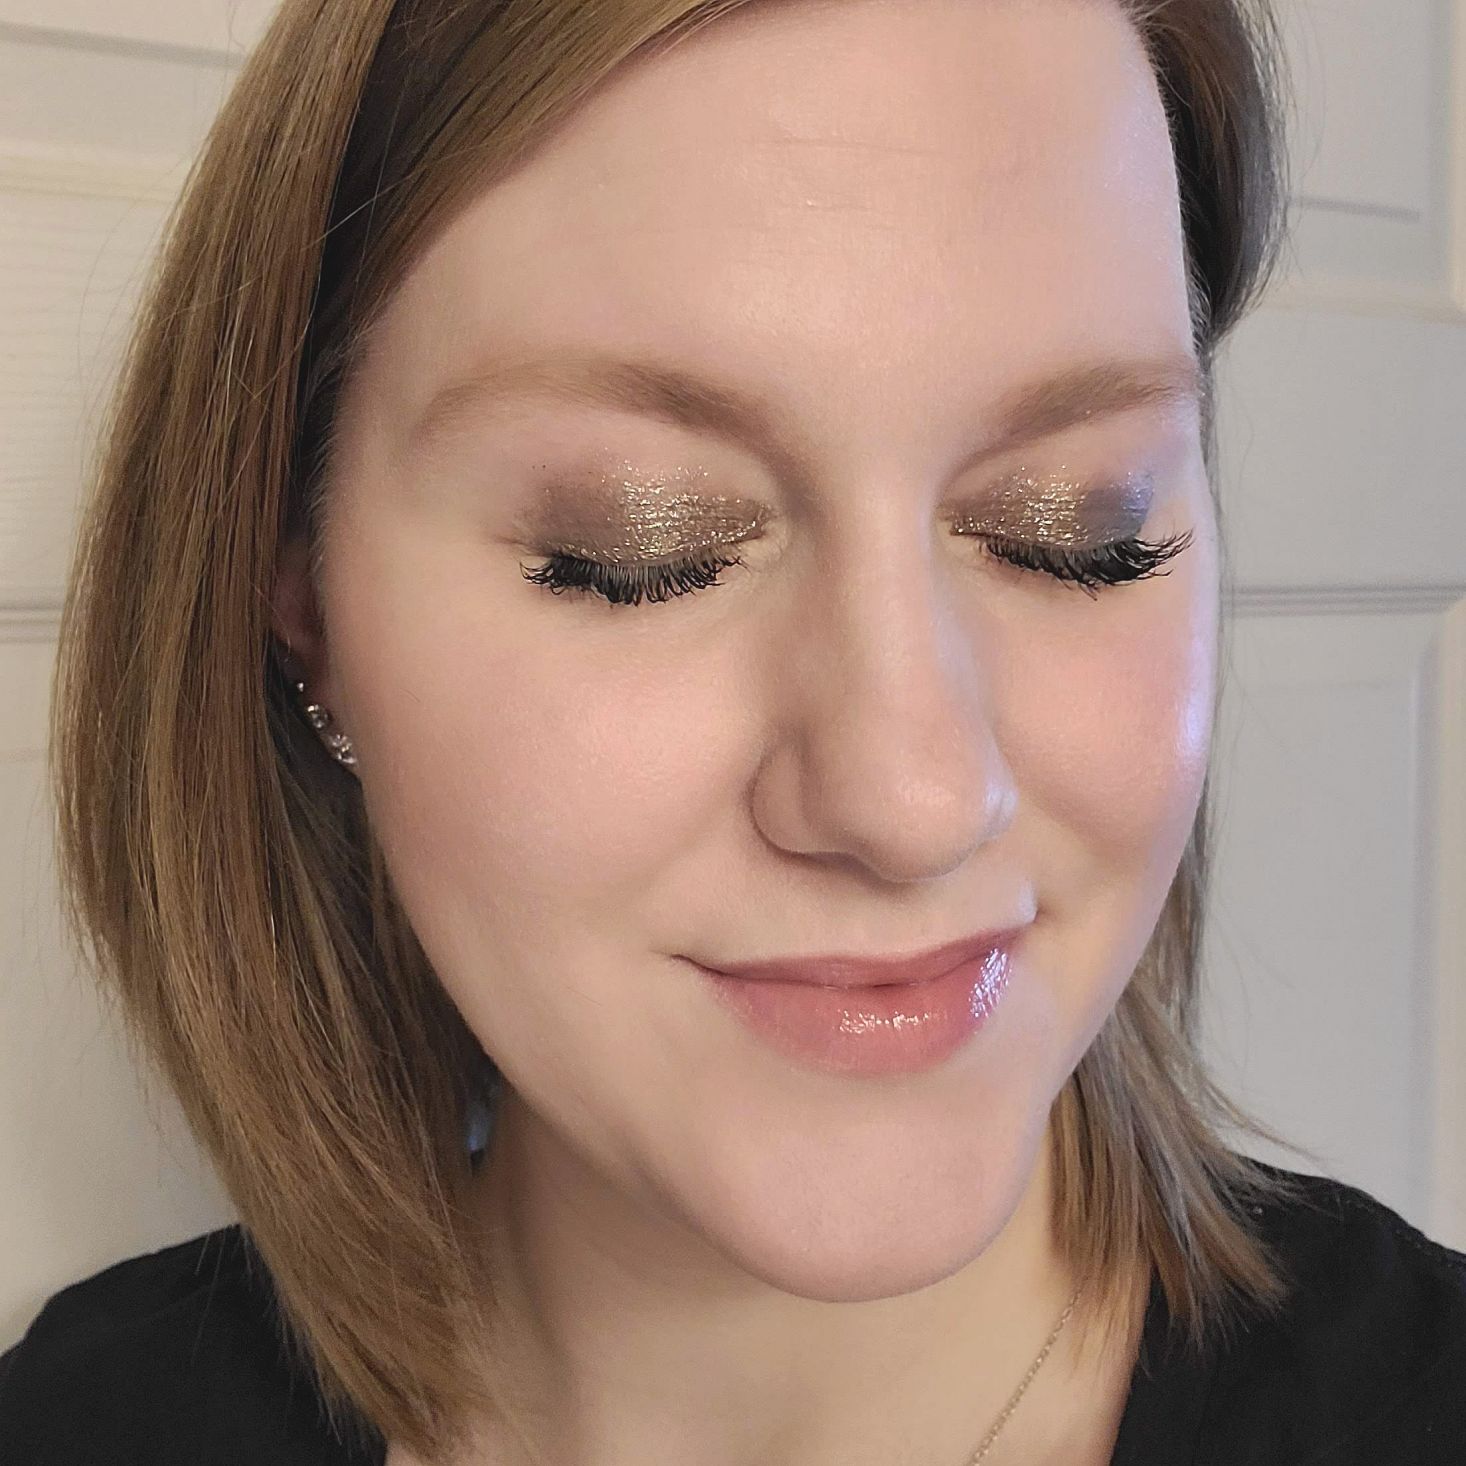 Tarte Create Your Own Kit October 2020 makeup close up